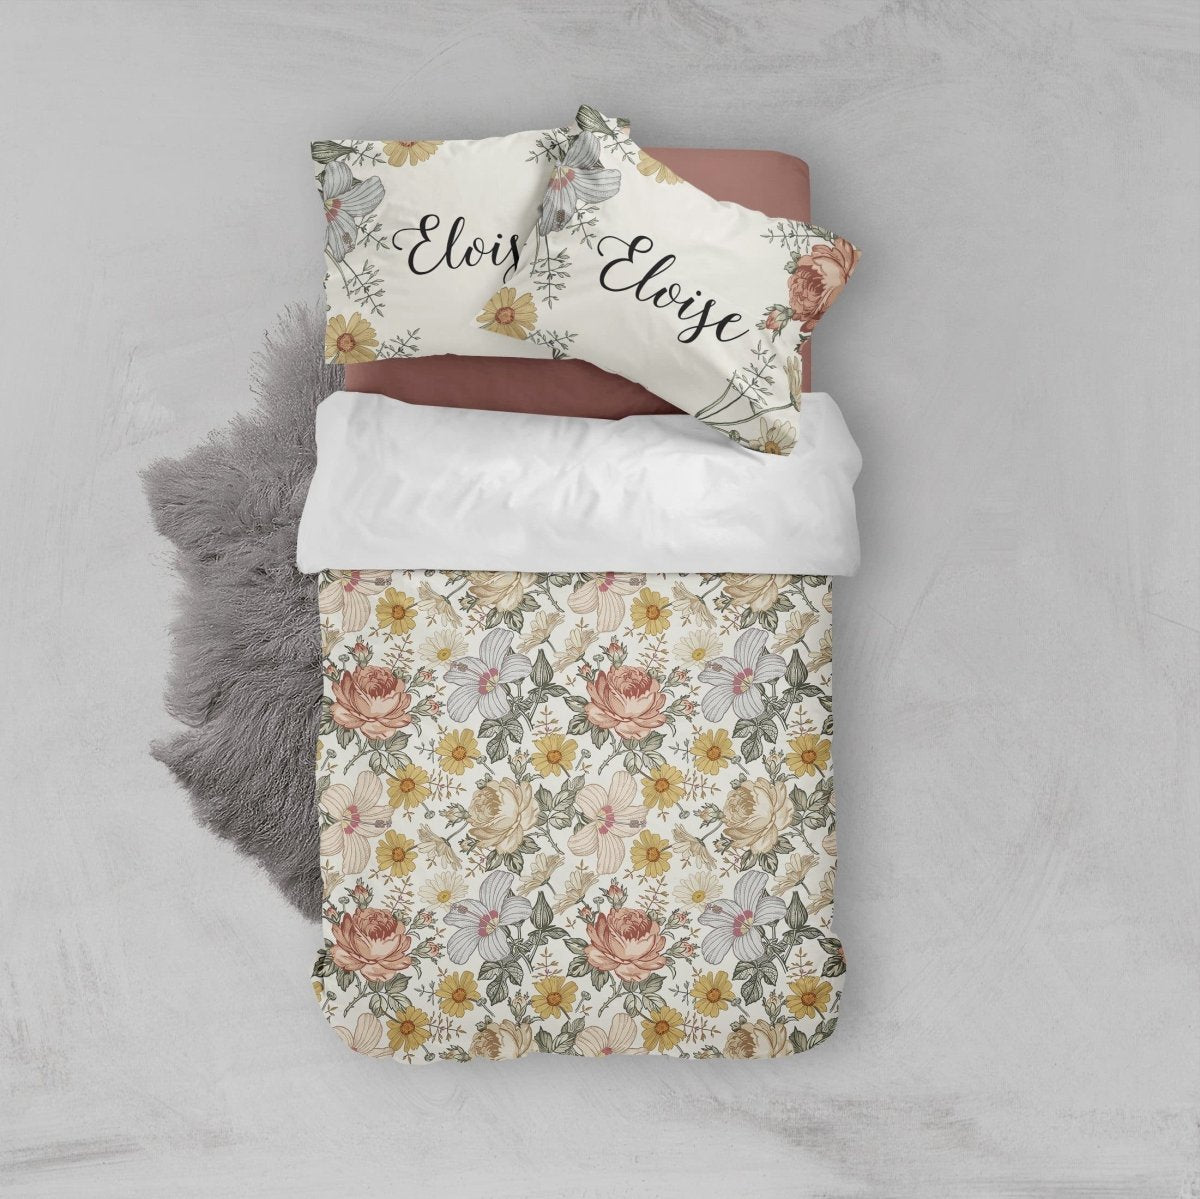 Vintage Floral Kids Bedding Set (Comforter or Duvet Cover) - gender_girl, text, Theme_Floral